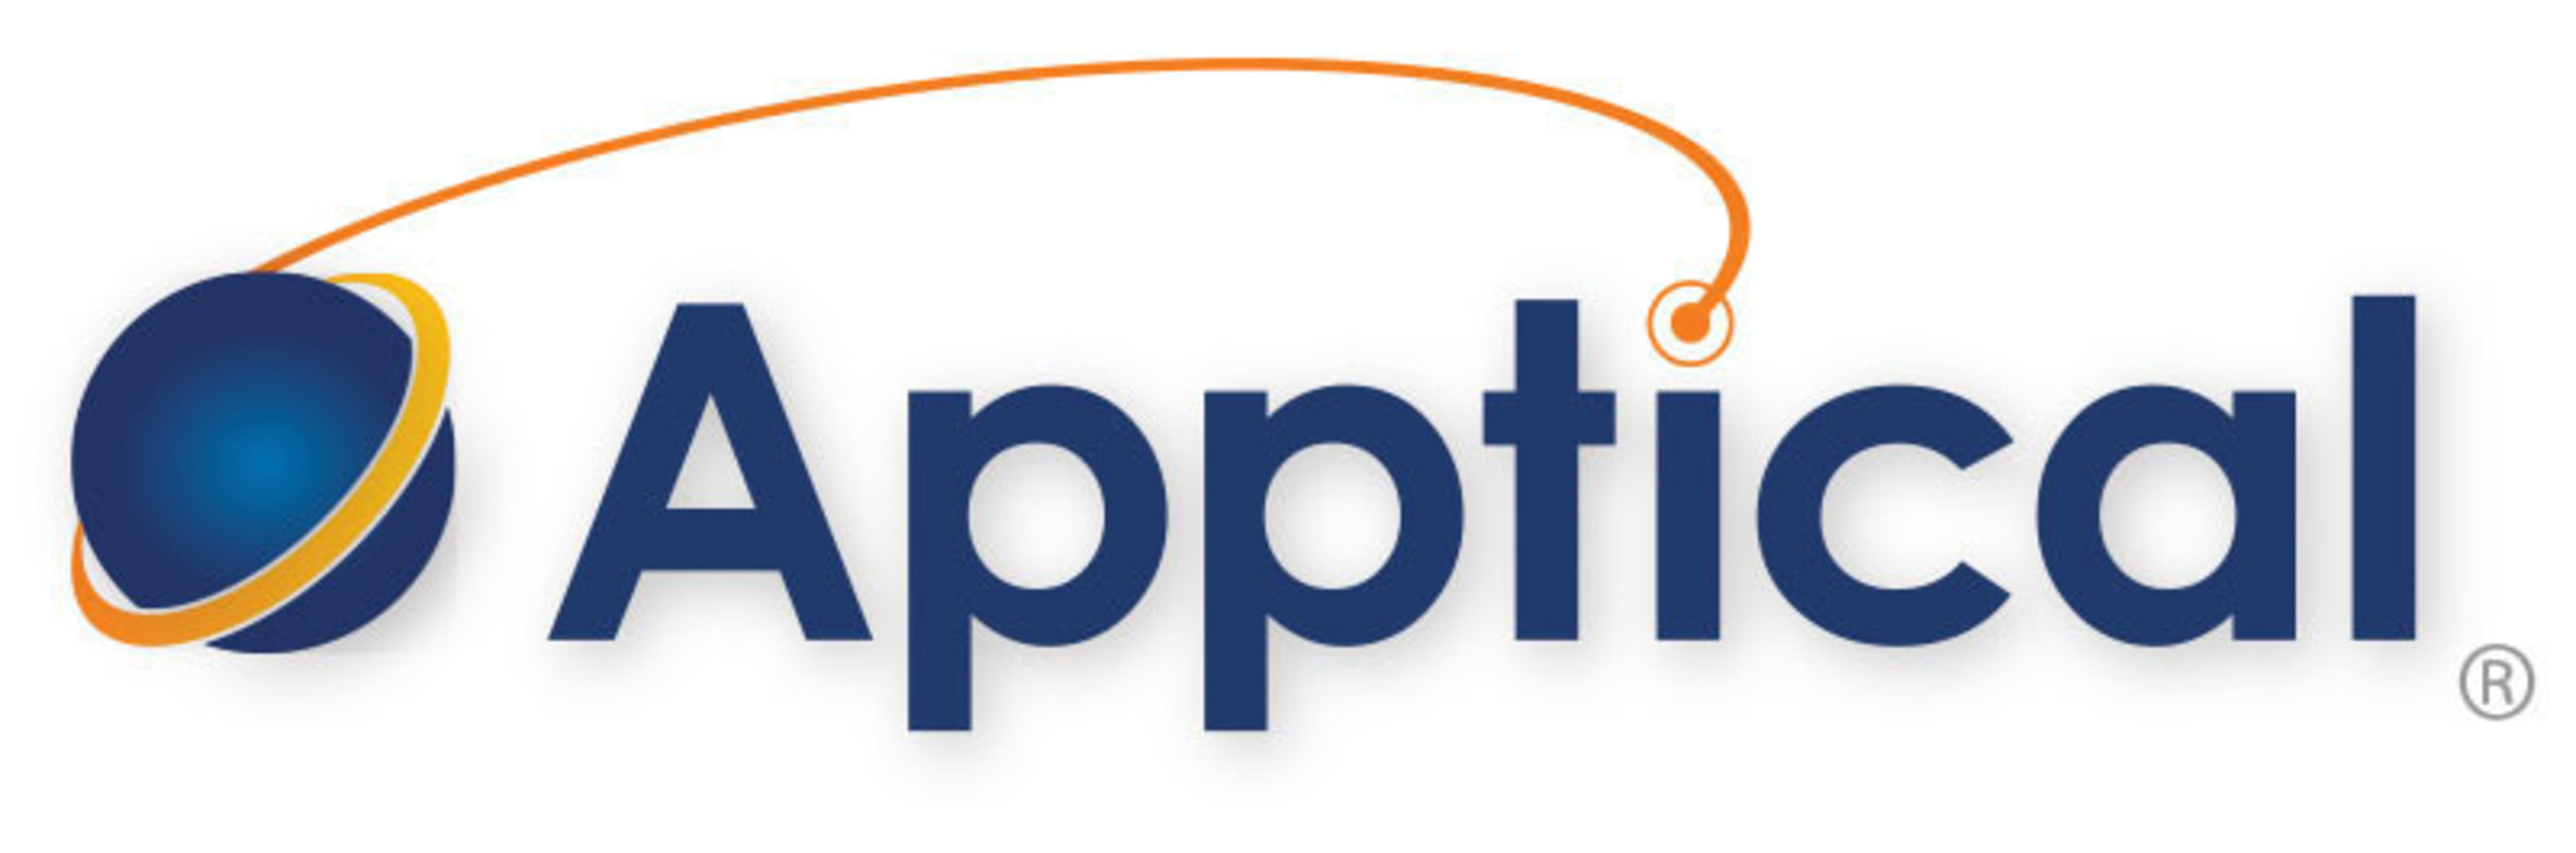 Apptical logo (PRNewsFoto/Apptical Corp.)